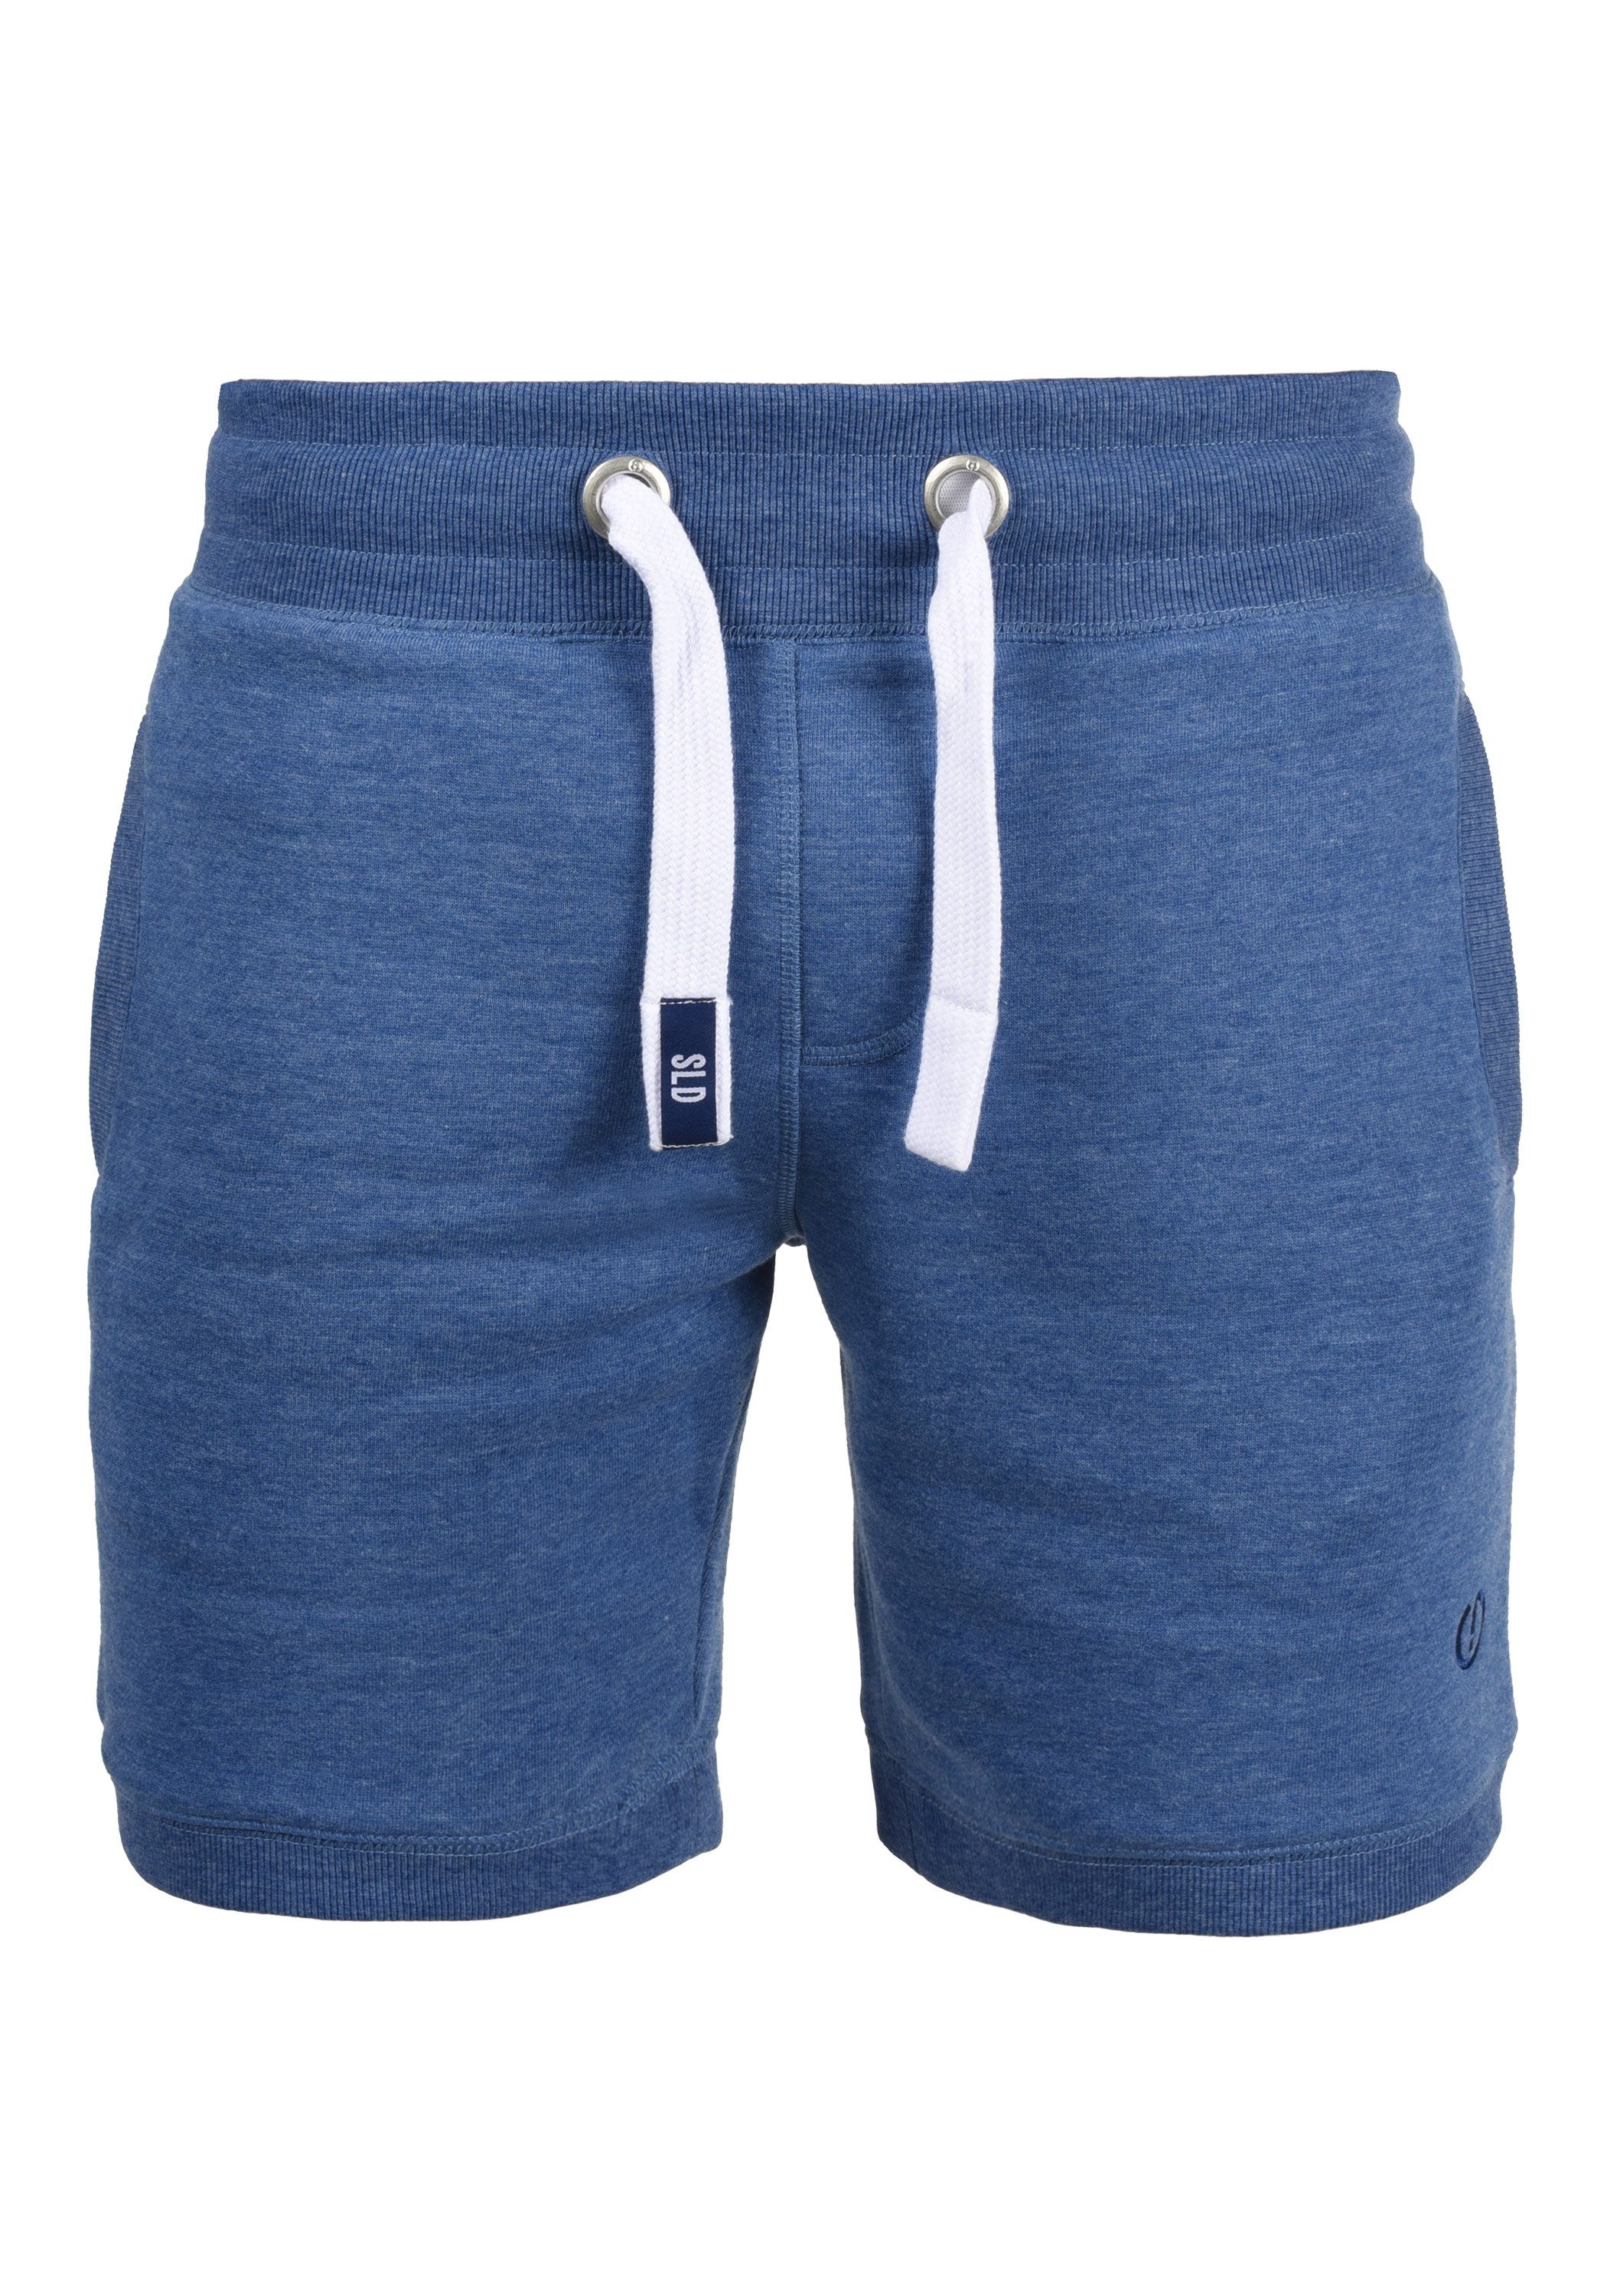 !Solid Sweatshorts SDBennShorts kurze Hose mit breiten Kontrastkordeln Faded Blue Melange (1542M)